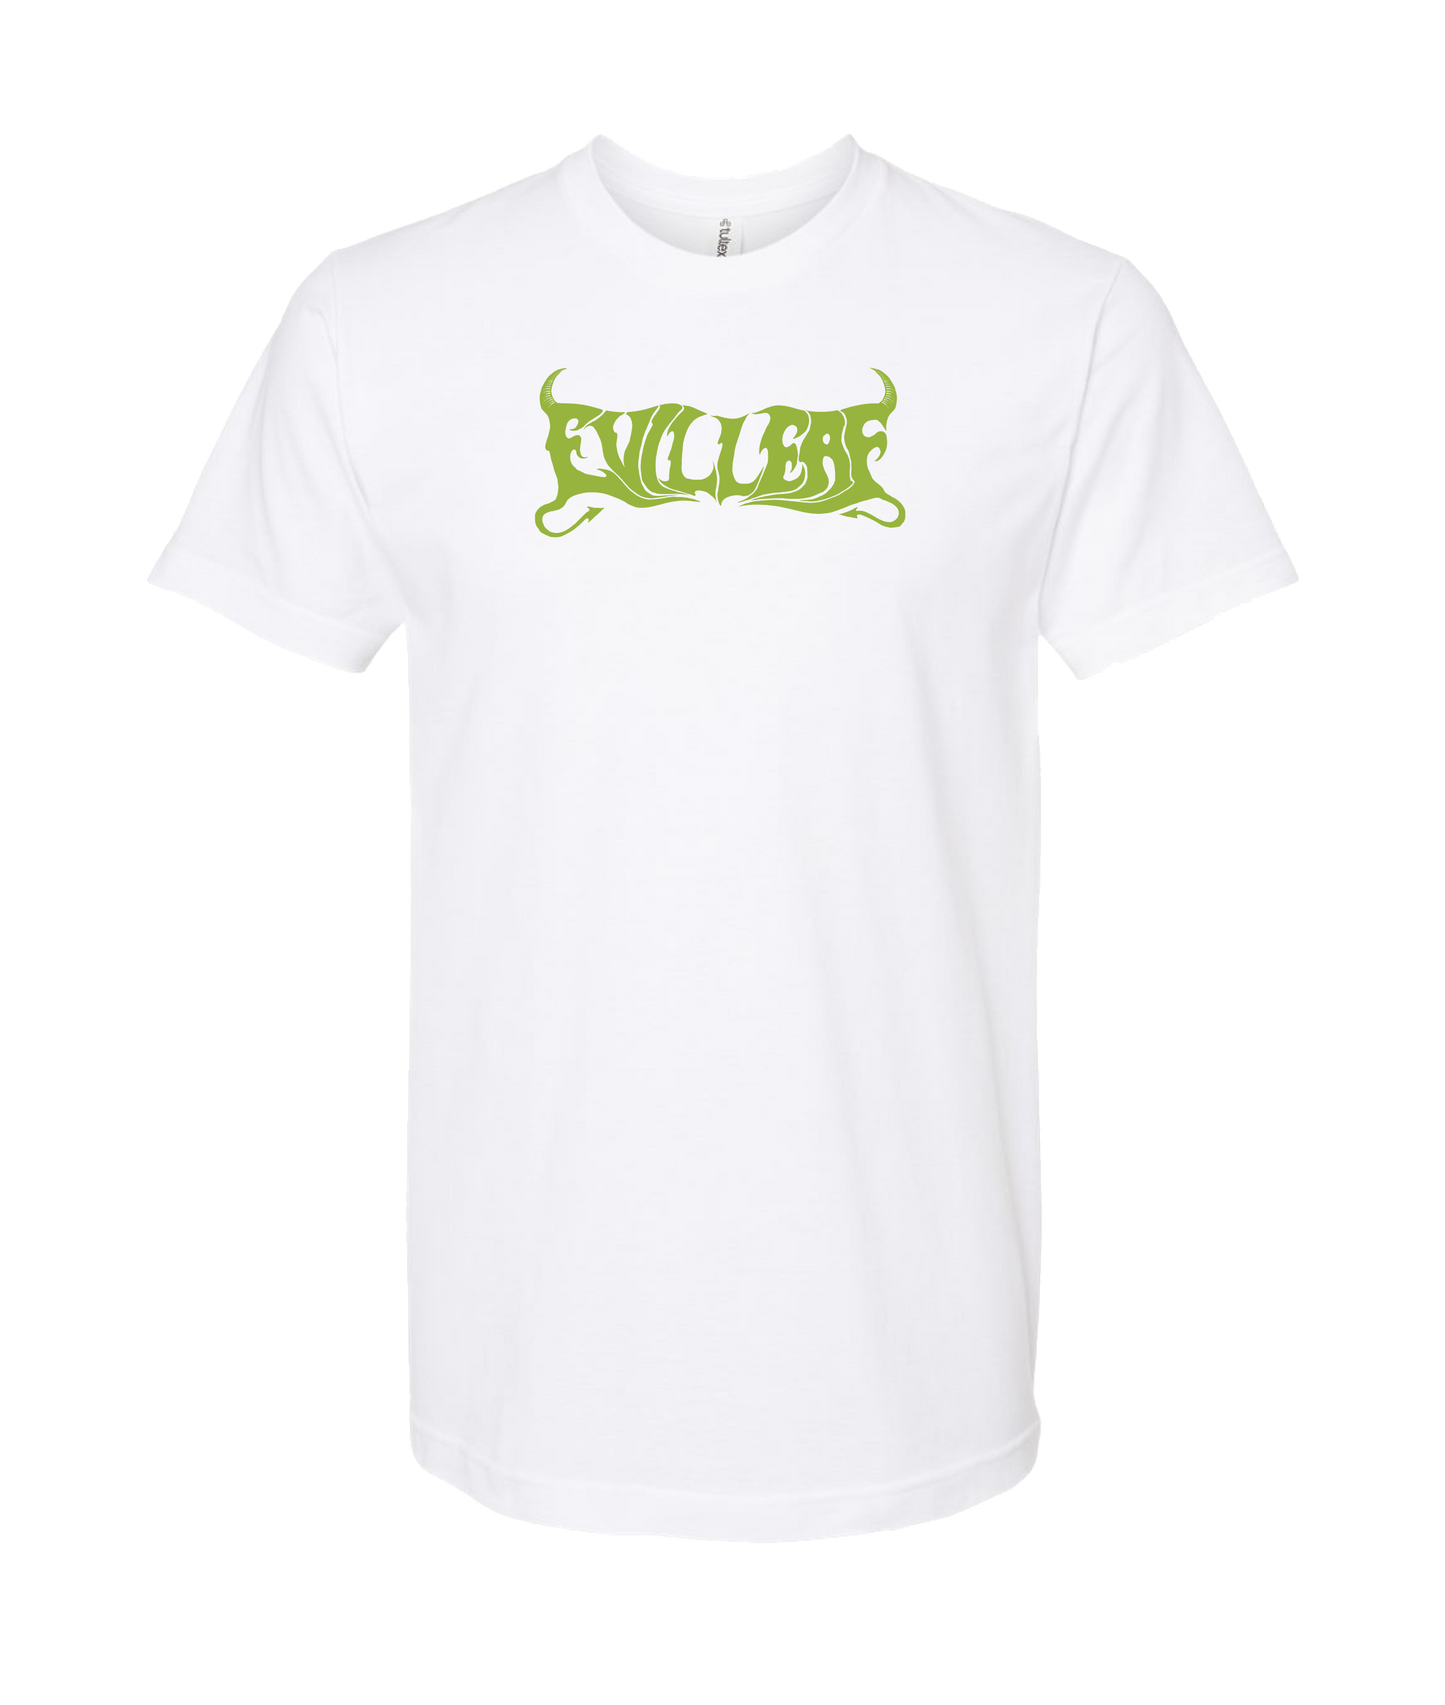 EvilLeaf - The Goat Leaf Of Evil - White T Shirt